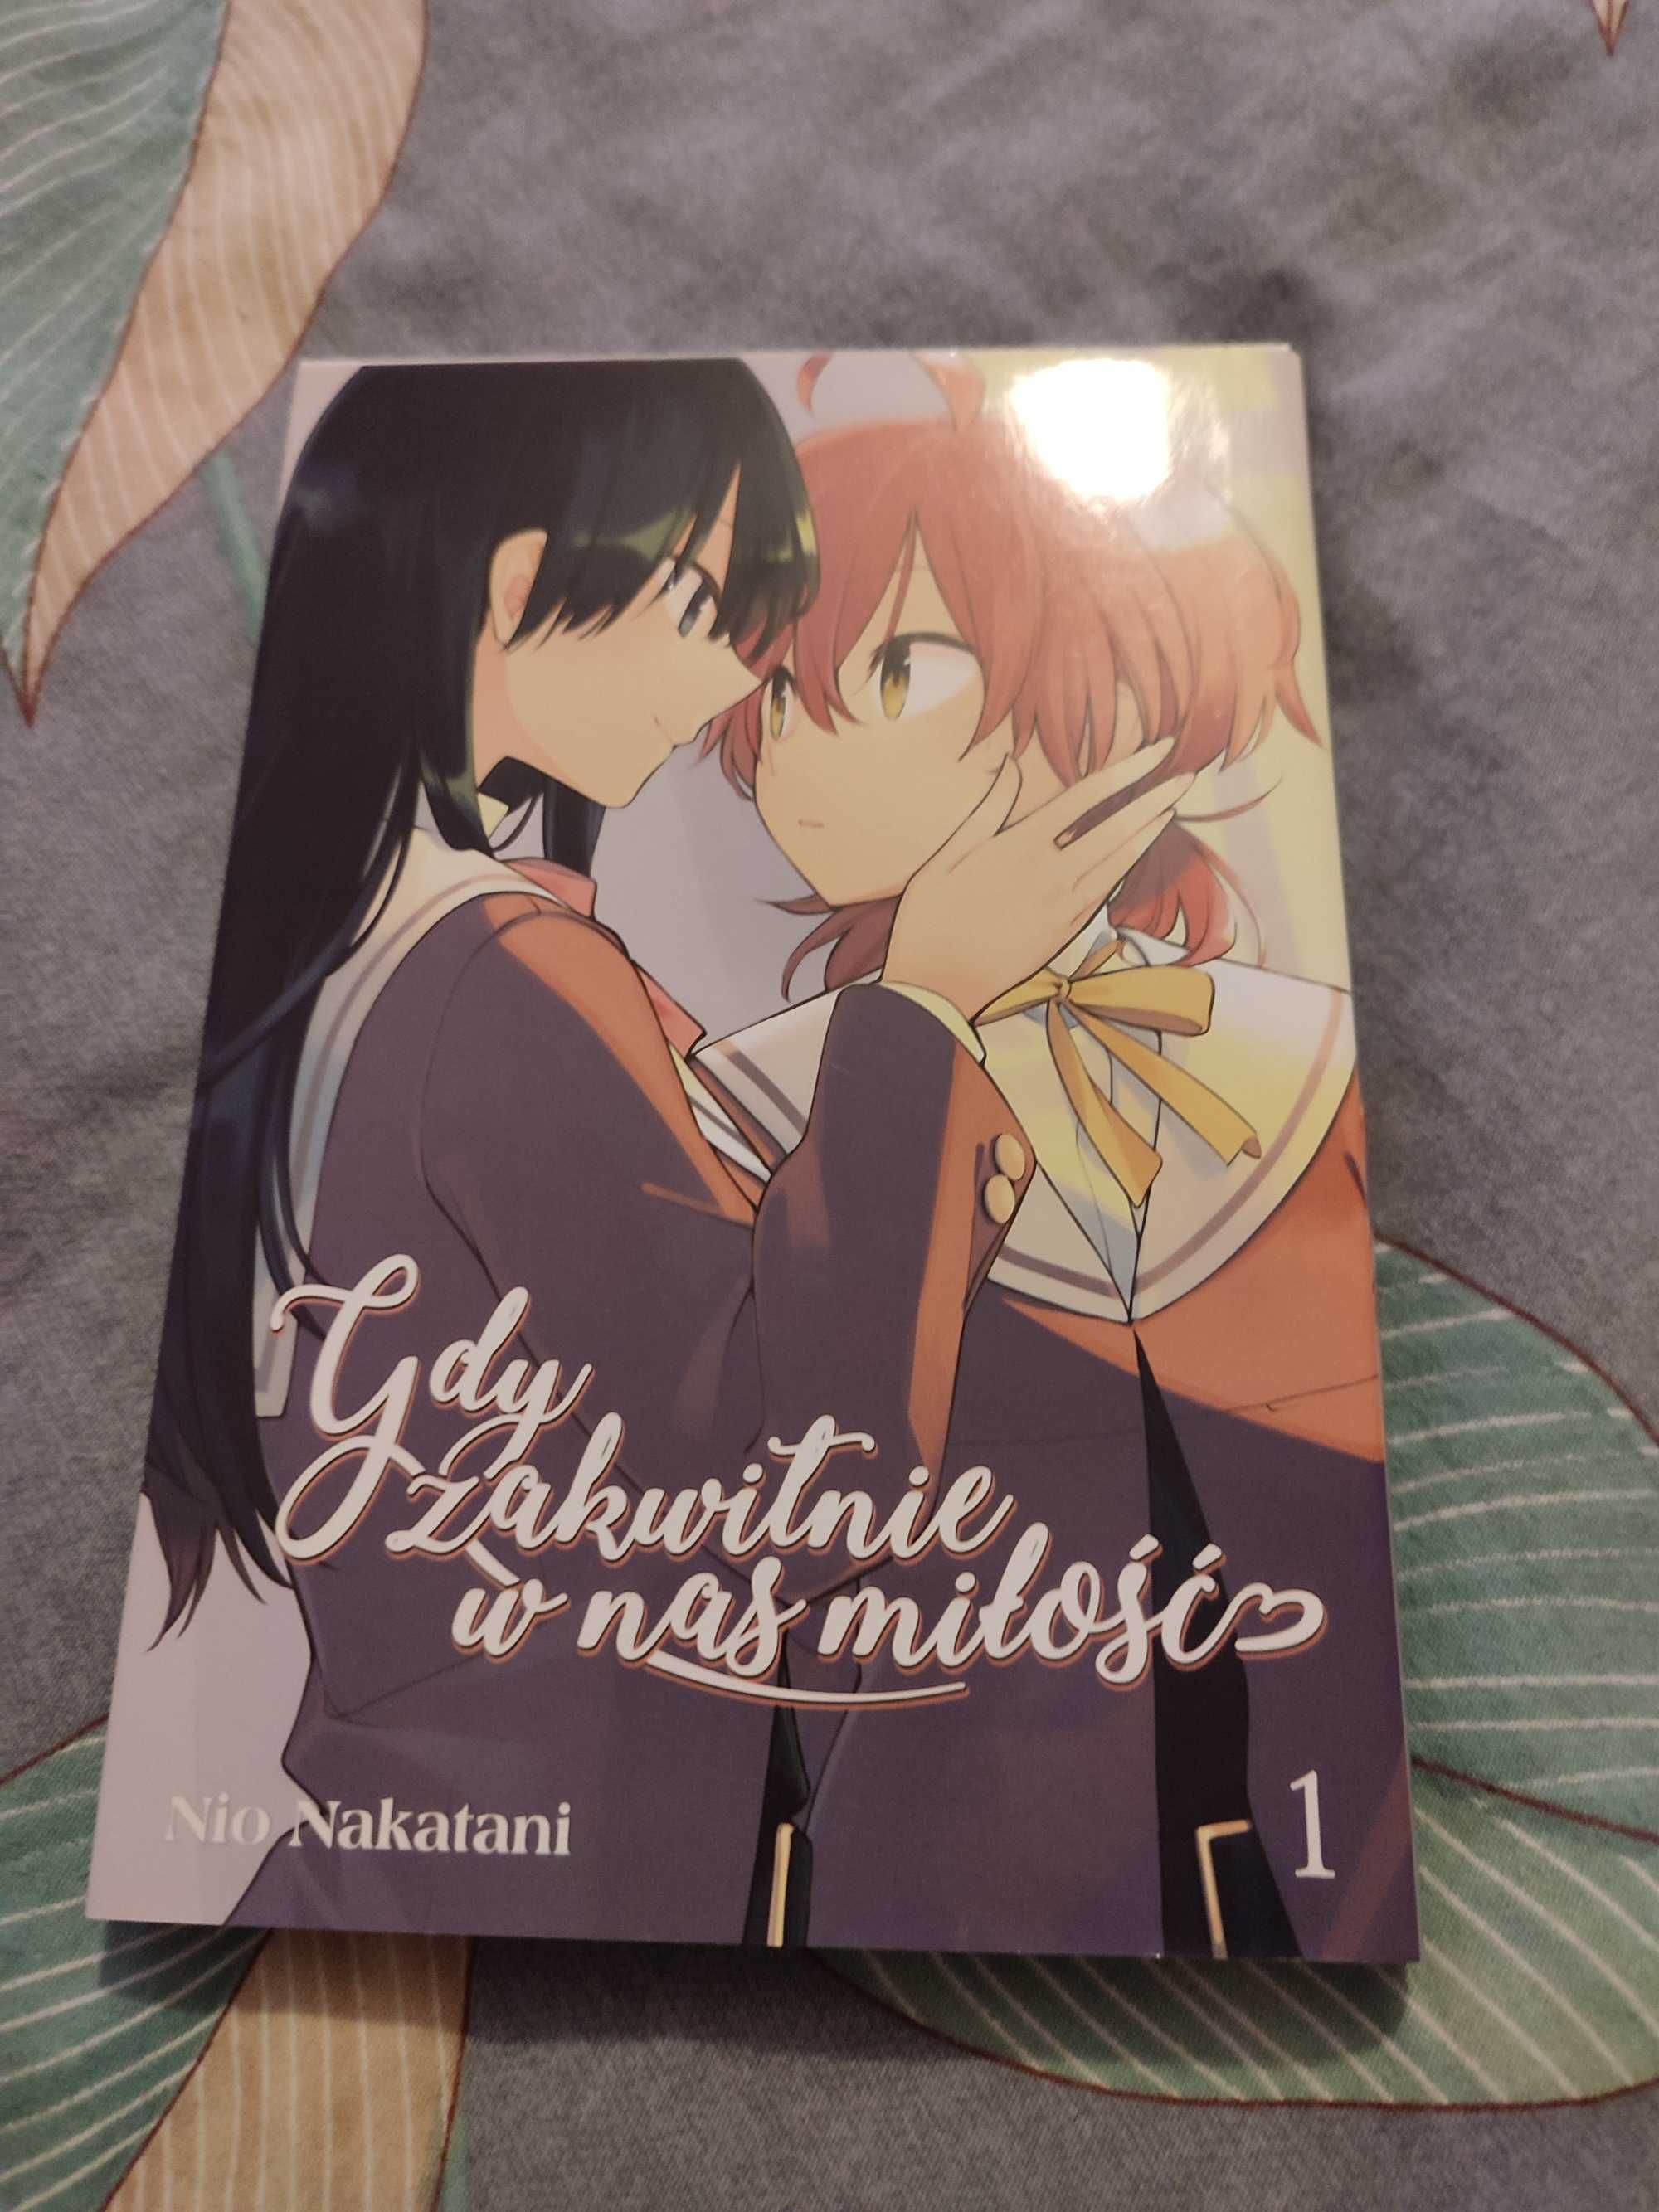 Manga gdy zakwitnie w nas miłość (Yuri)